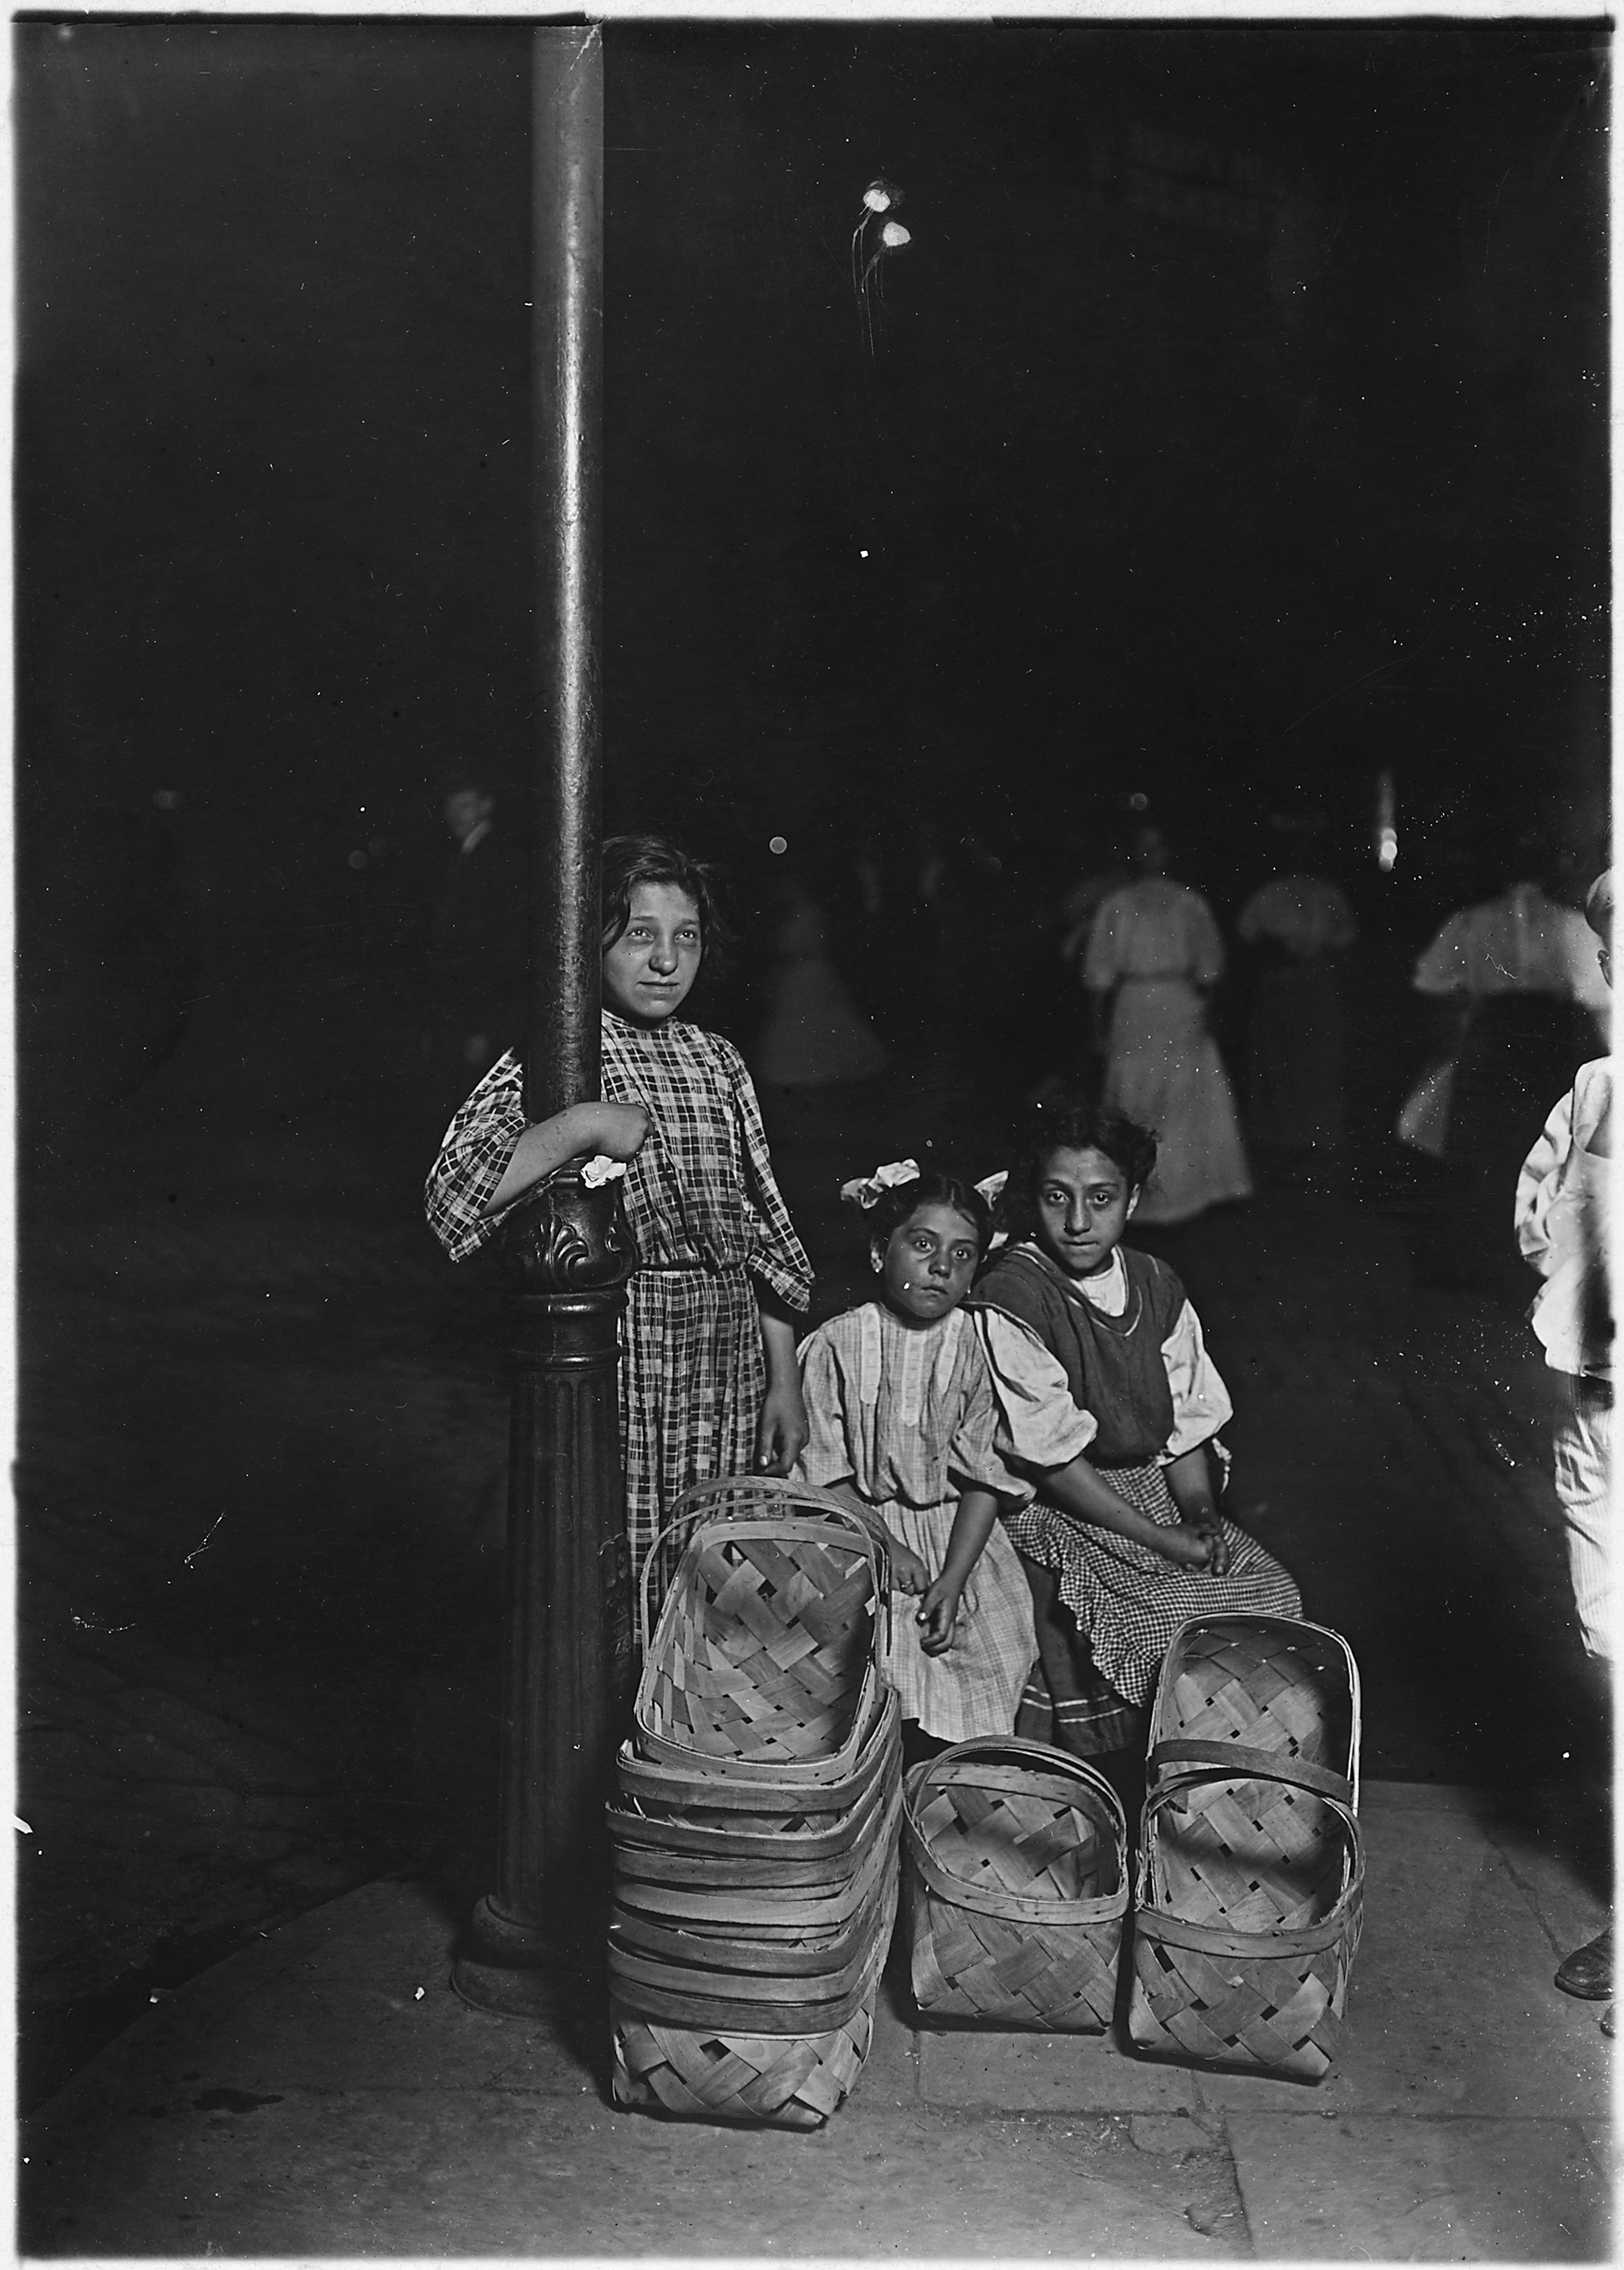 Marie Costa, basket seller, in a Cincinnati market. 10 A.M. Saturday. Cincinnati, OH. - NARA - 523070